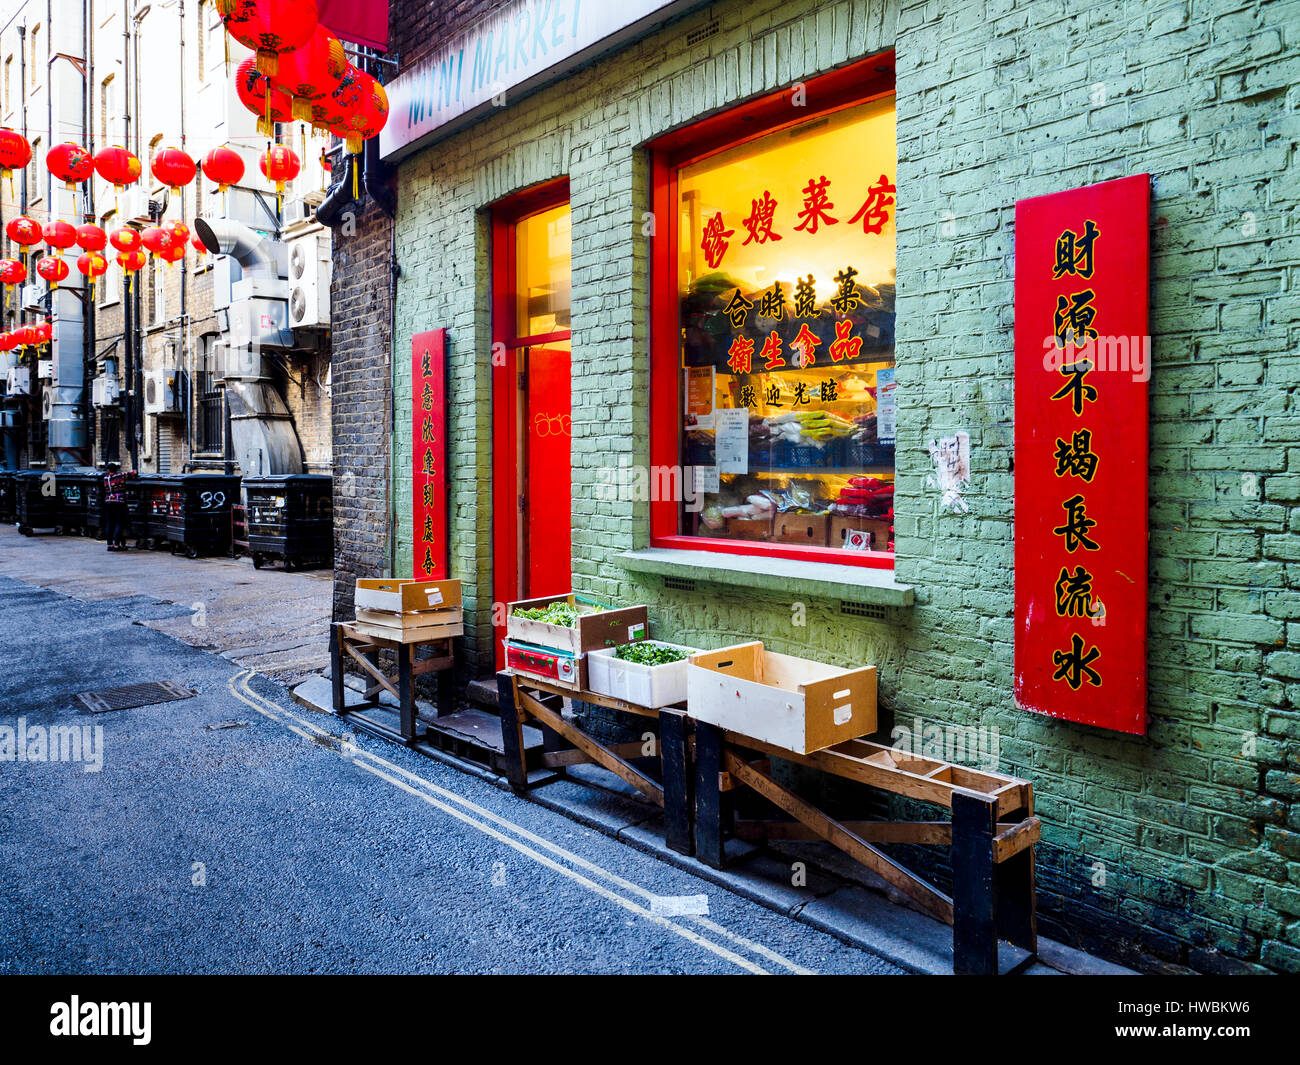 China town in Soho - London, England Stock Photo